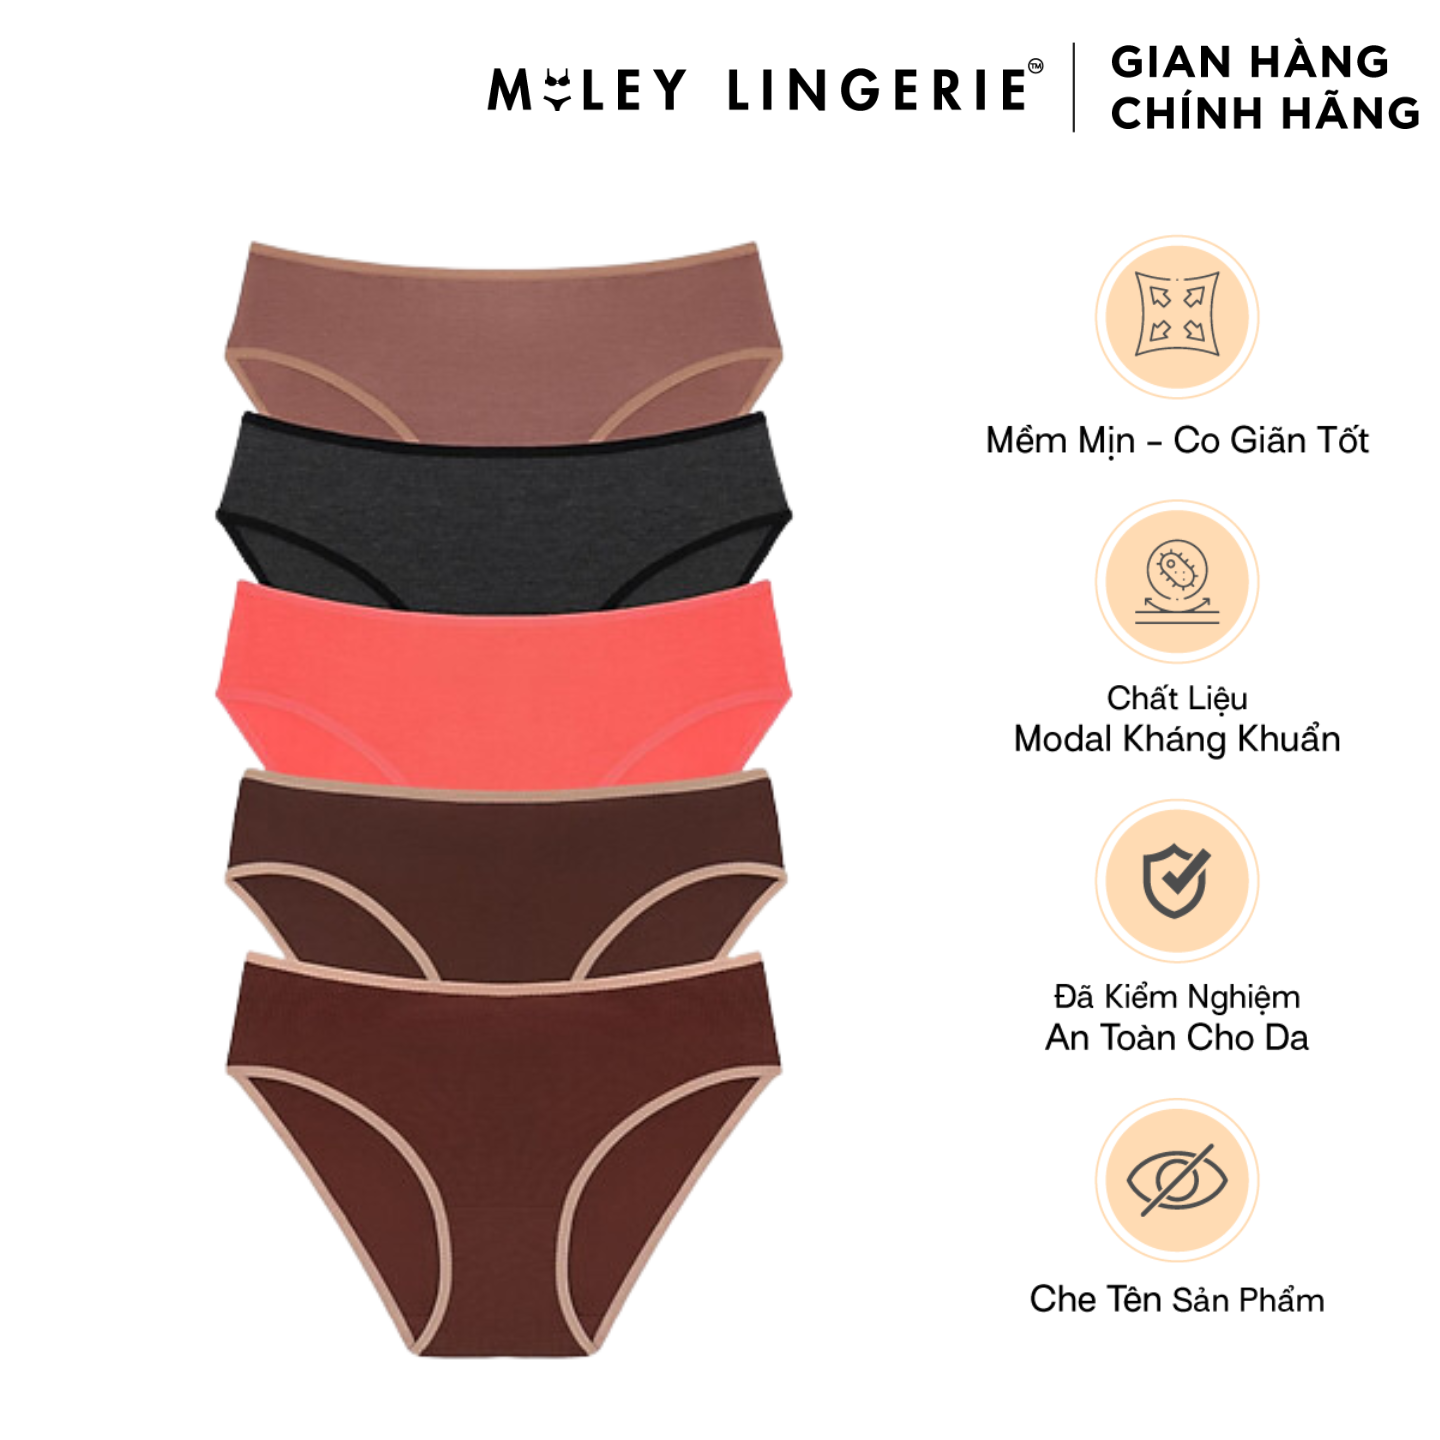 Hình ảnh Combo 5 Quần Lót Nữ Cotton Flexi Miley Lingerie - Giao màu ngẫu nhiên